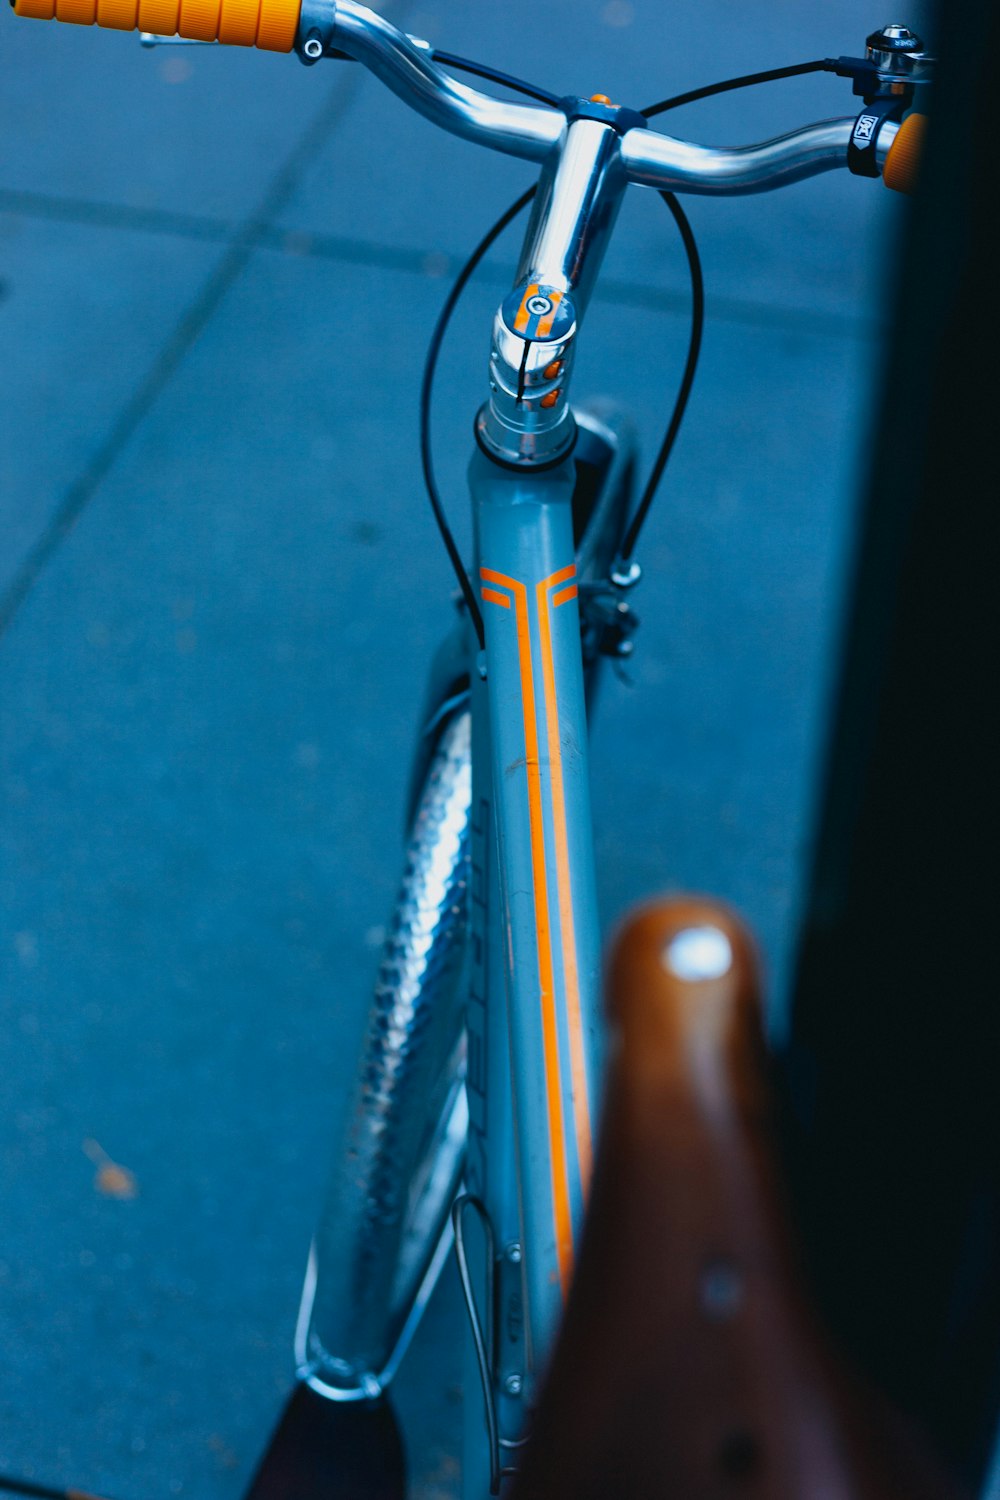 Fotografia de foco raso do quadro da bicicleta do teal